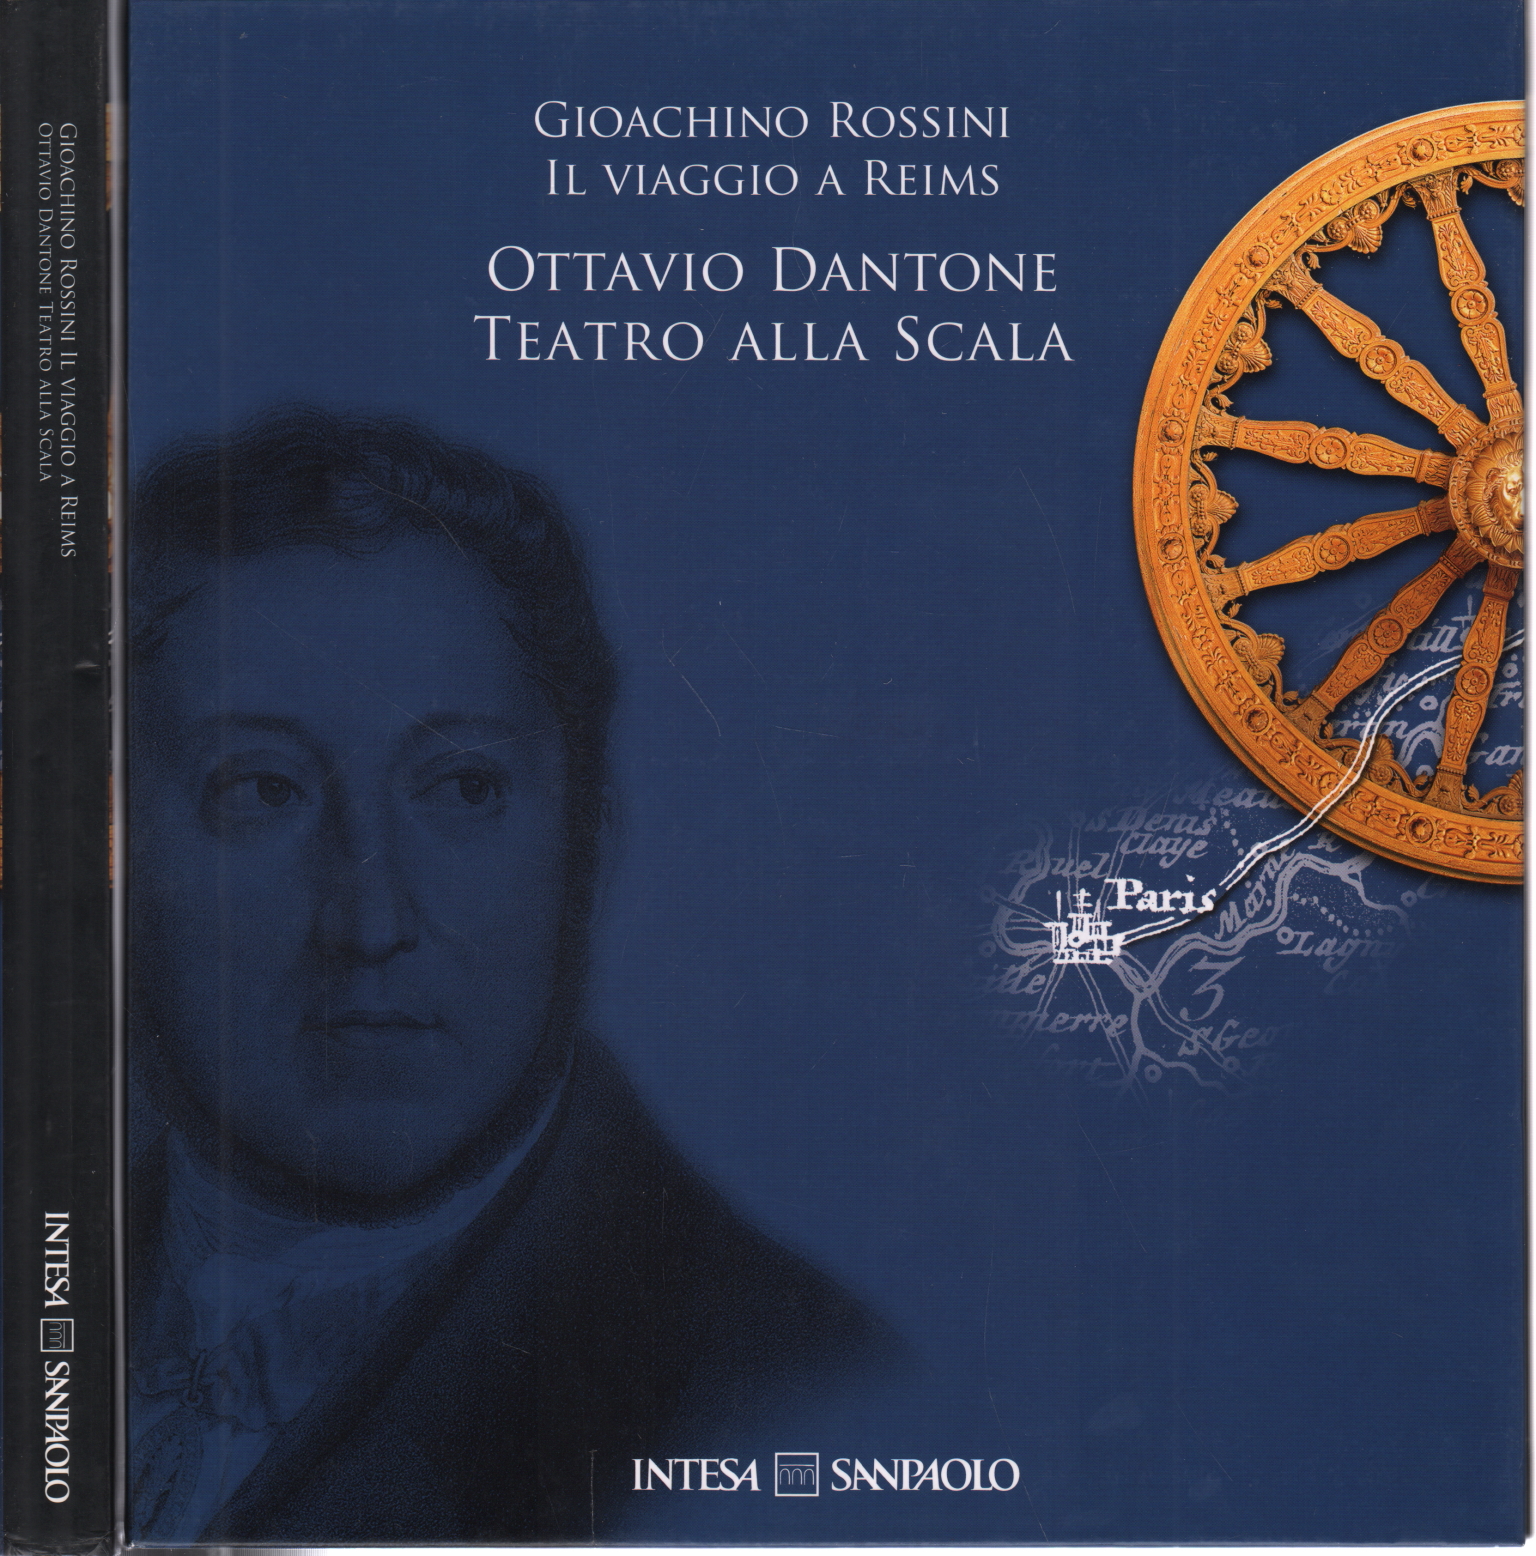 Gioacchino Rossini "Il viaggio a Reims" D'Ottavio, Gioacchino Rossini